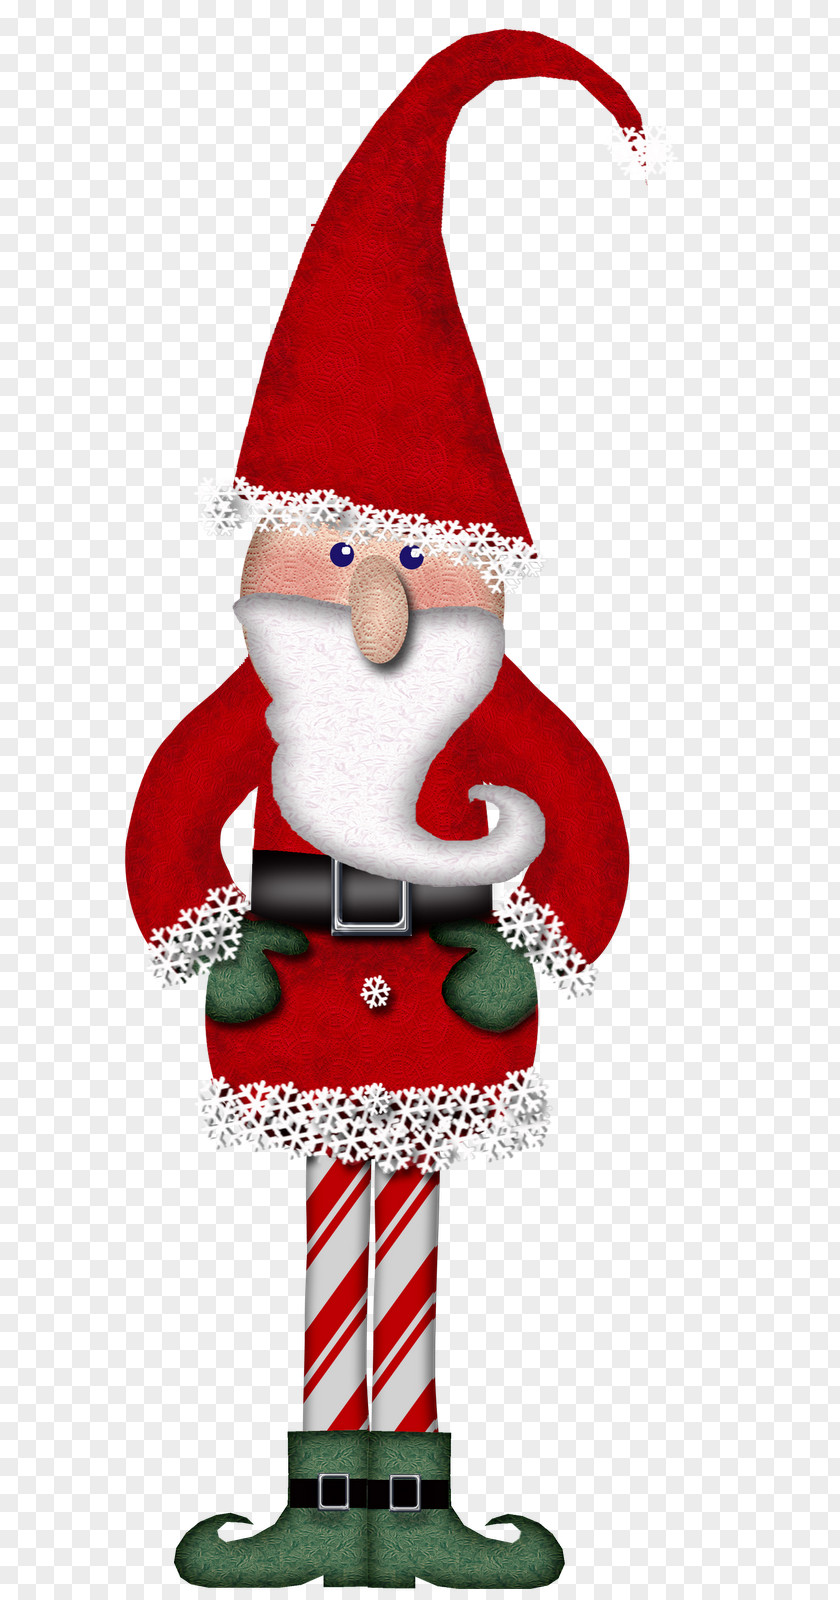 Christmas Posters Element Santa Claus Ornament Decoration Clip Art PNG